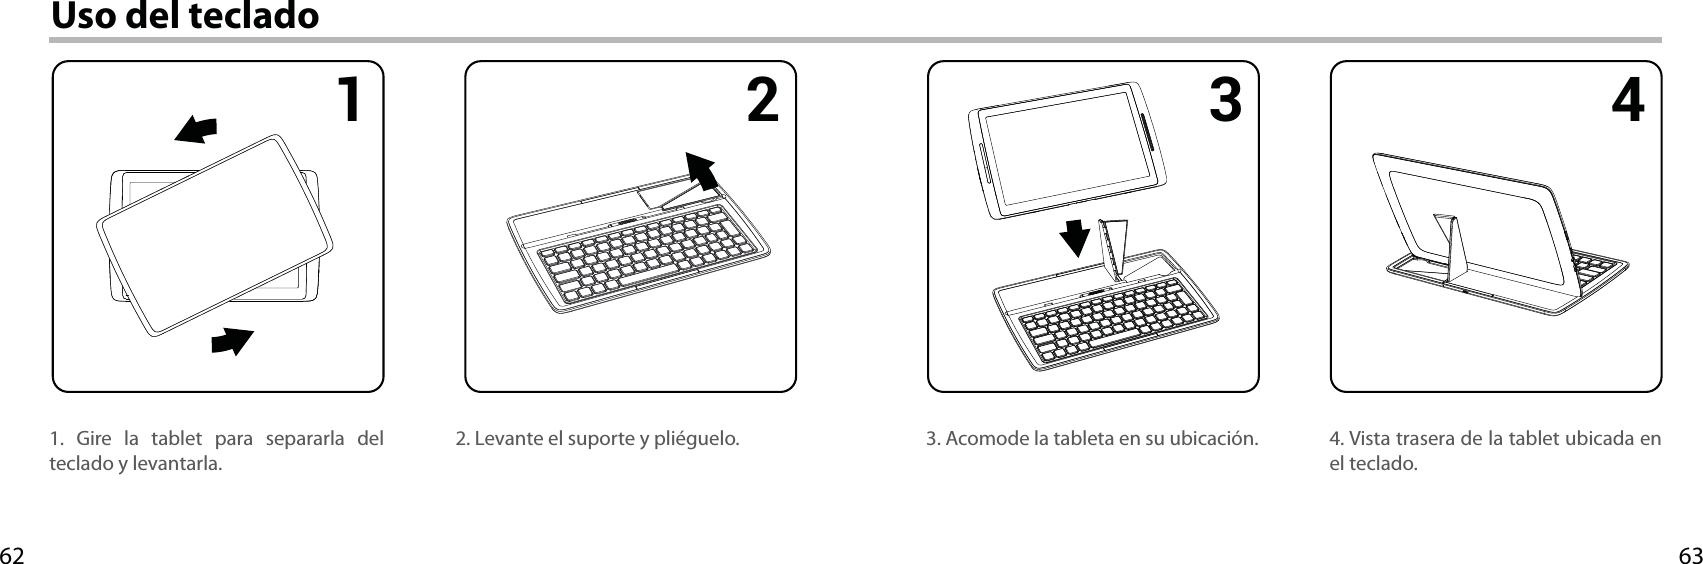 63621 2 3 4Uso del teclado1. Gire la tablet para separarla del teclado y levantarla.4. Vista trasera de la tablet ubicada en el teclado.3. Acomode la tableta en su ubicación.2. Levante el suporte y pliéguelo.